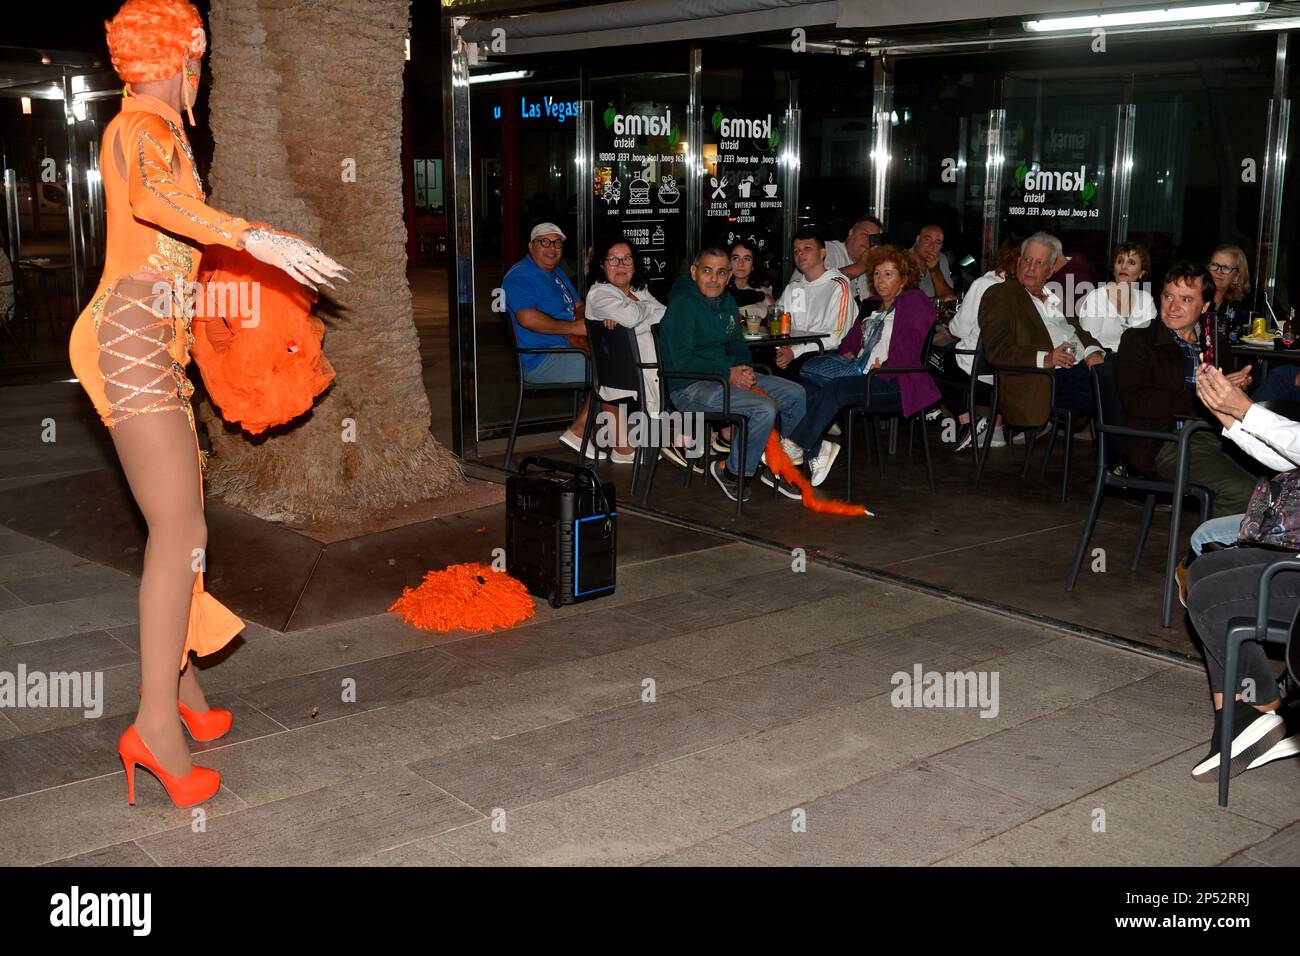 Artiste de dragons, busseur de rue en représentation burlesque en soirée au bar extérieur (Sala de juego Las Vegas) à Arinaga, Gran Canaria Banque D'Images